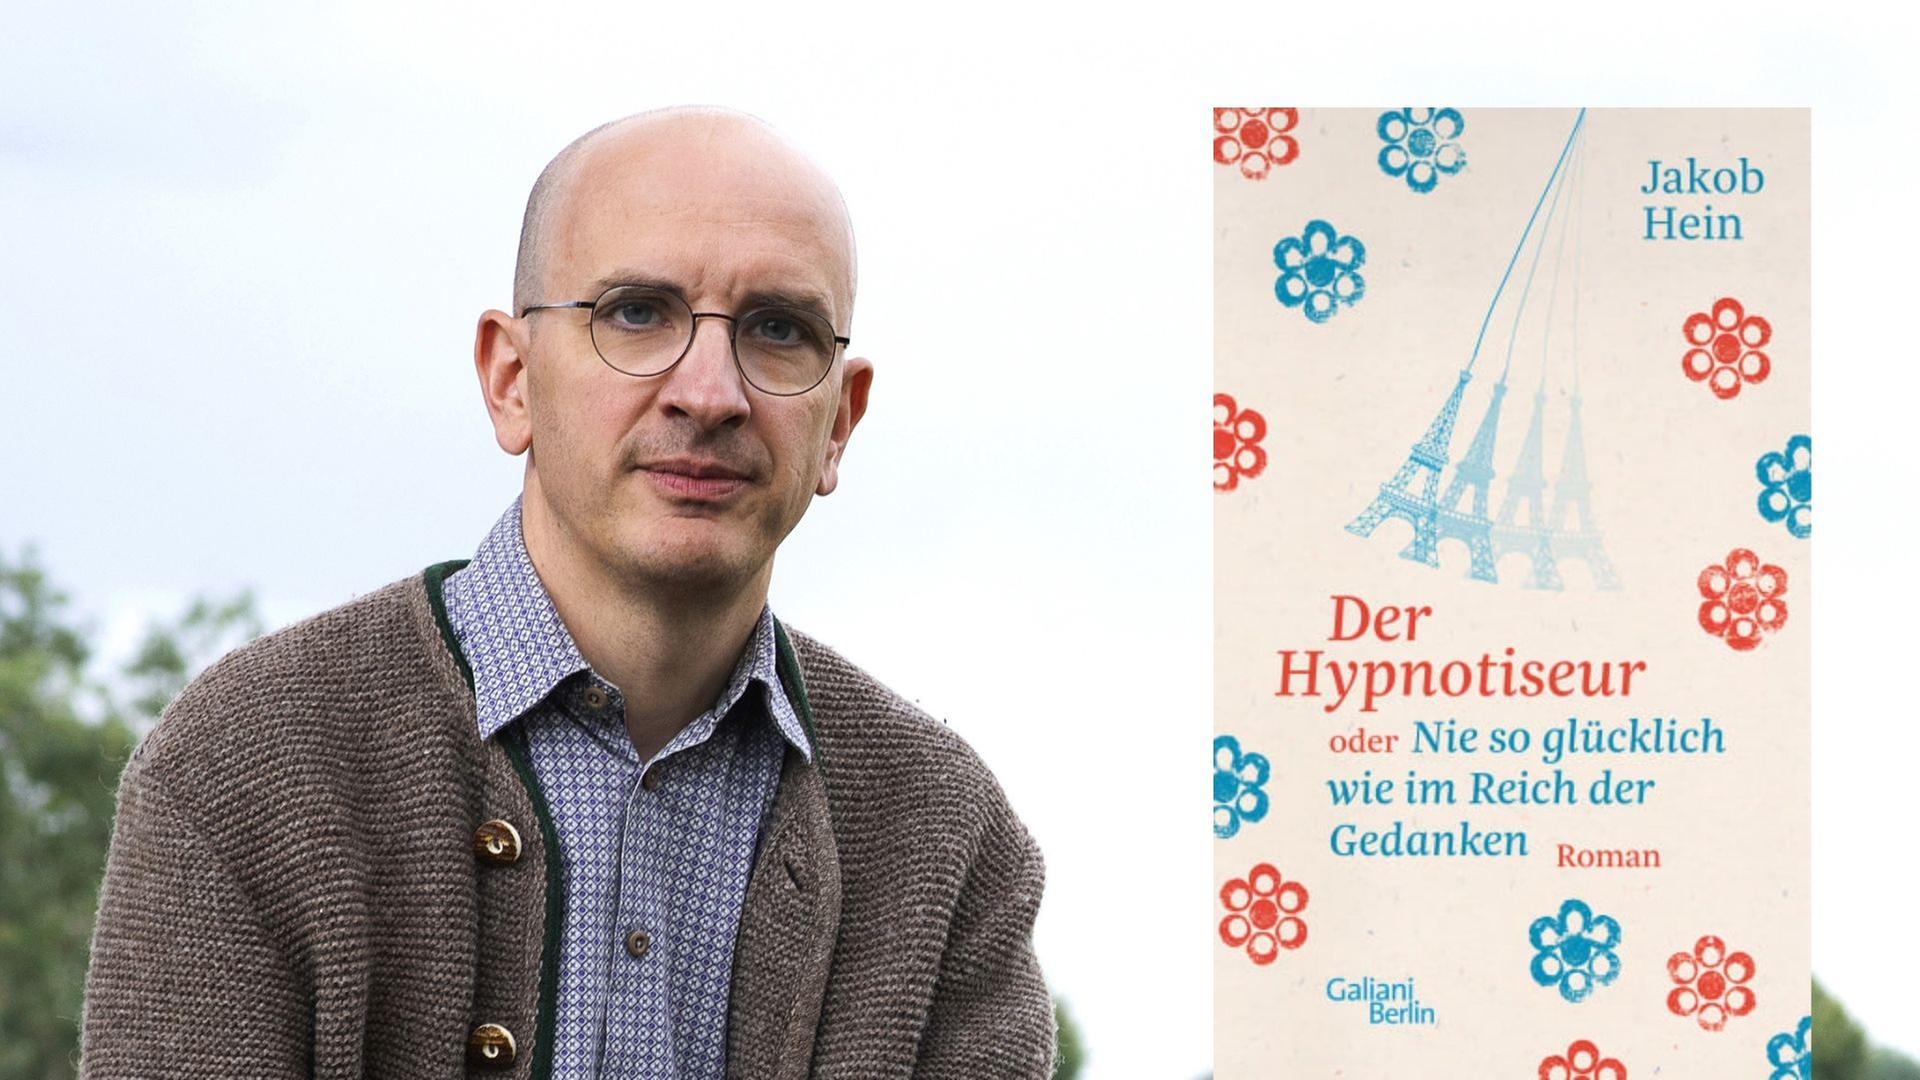 Jakob Hein und sein Roman „Der Hypnotiseur oder Nie so glücklich wie im Reich der Gedanken“